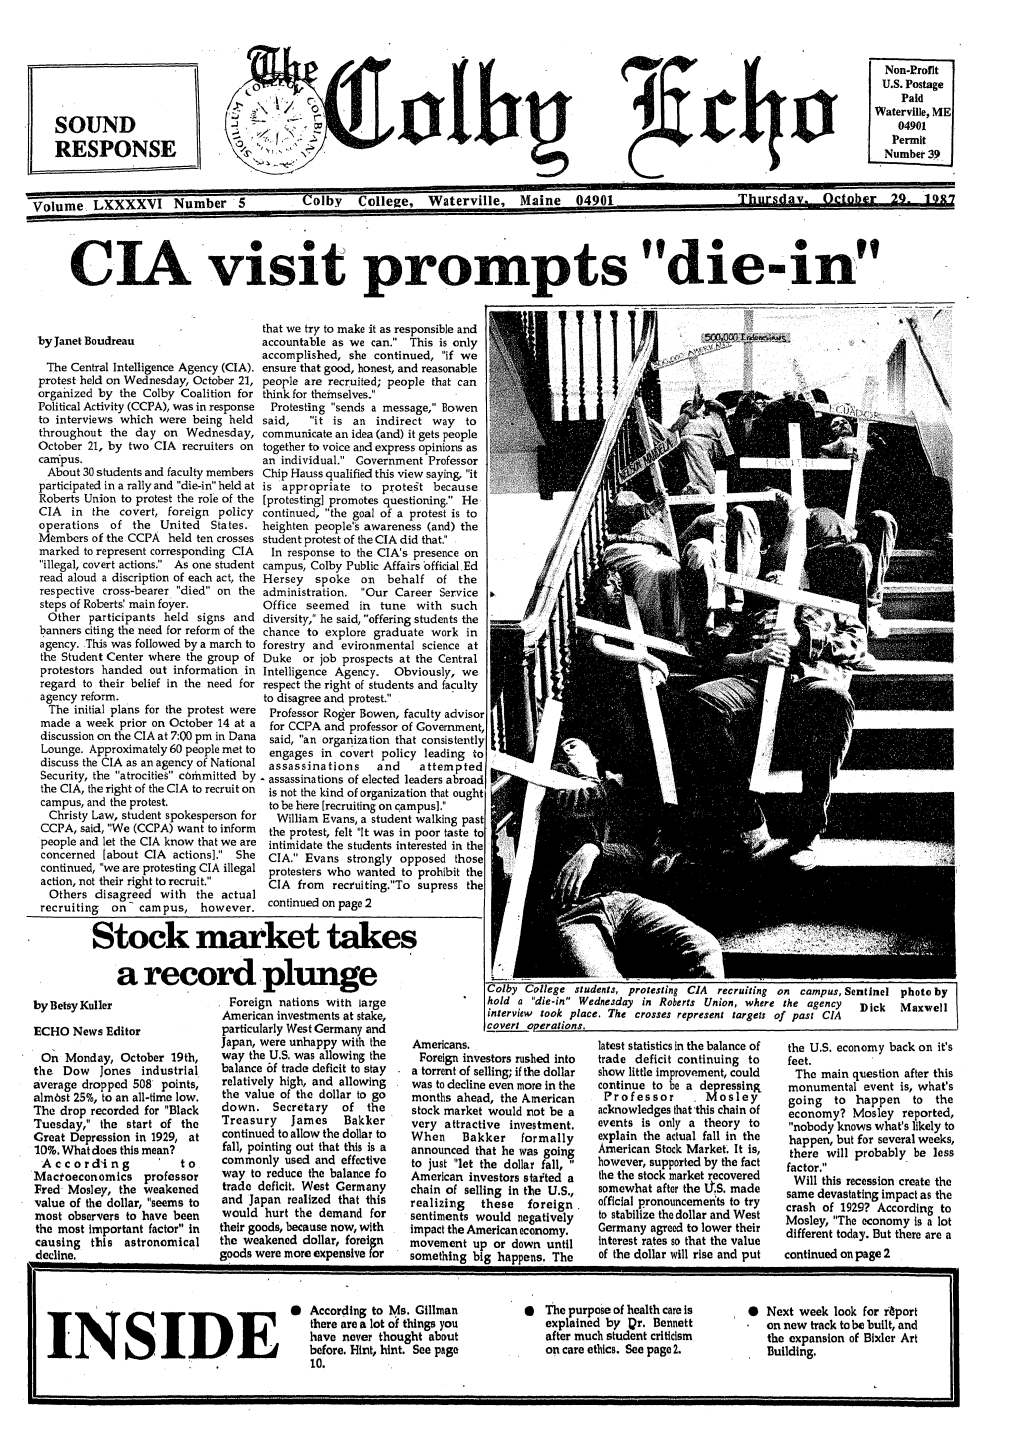 CIA Visit Prompts Die-In